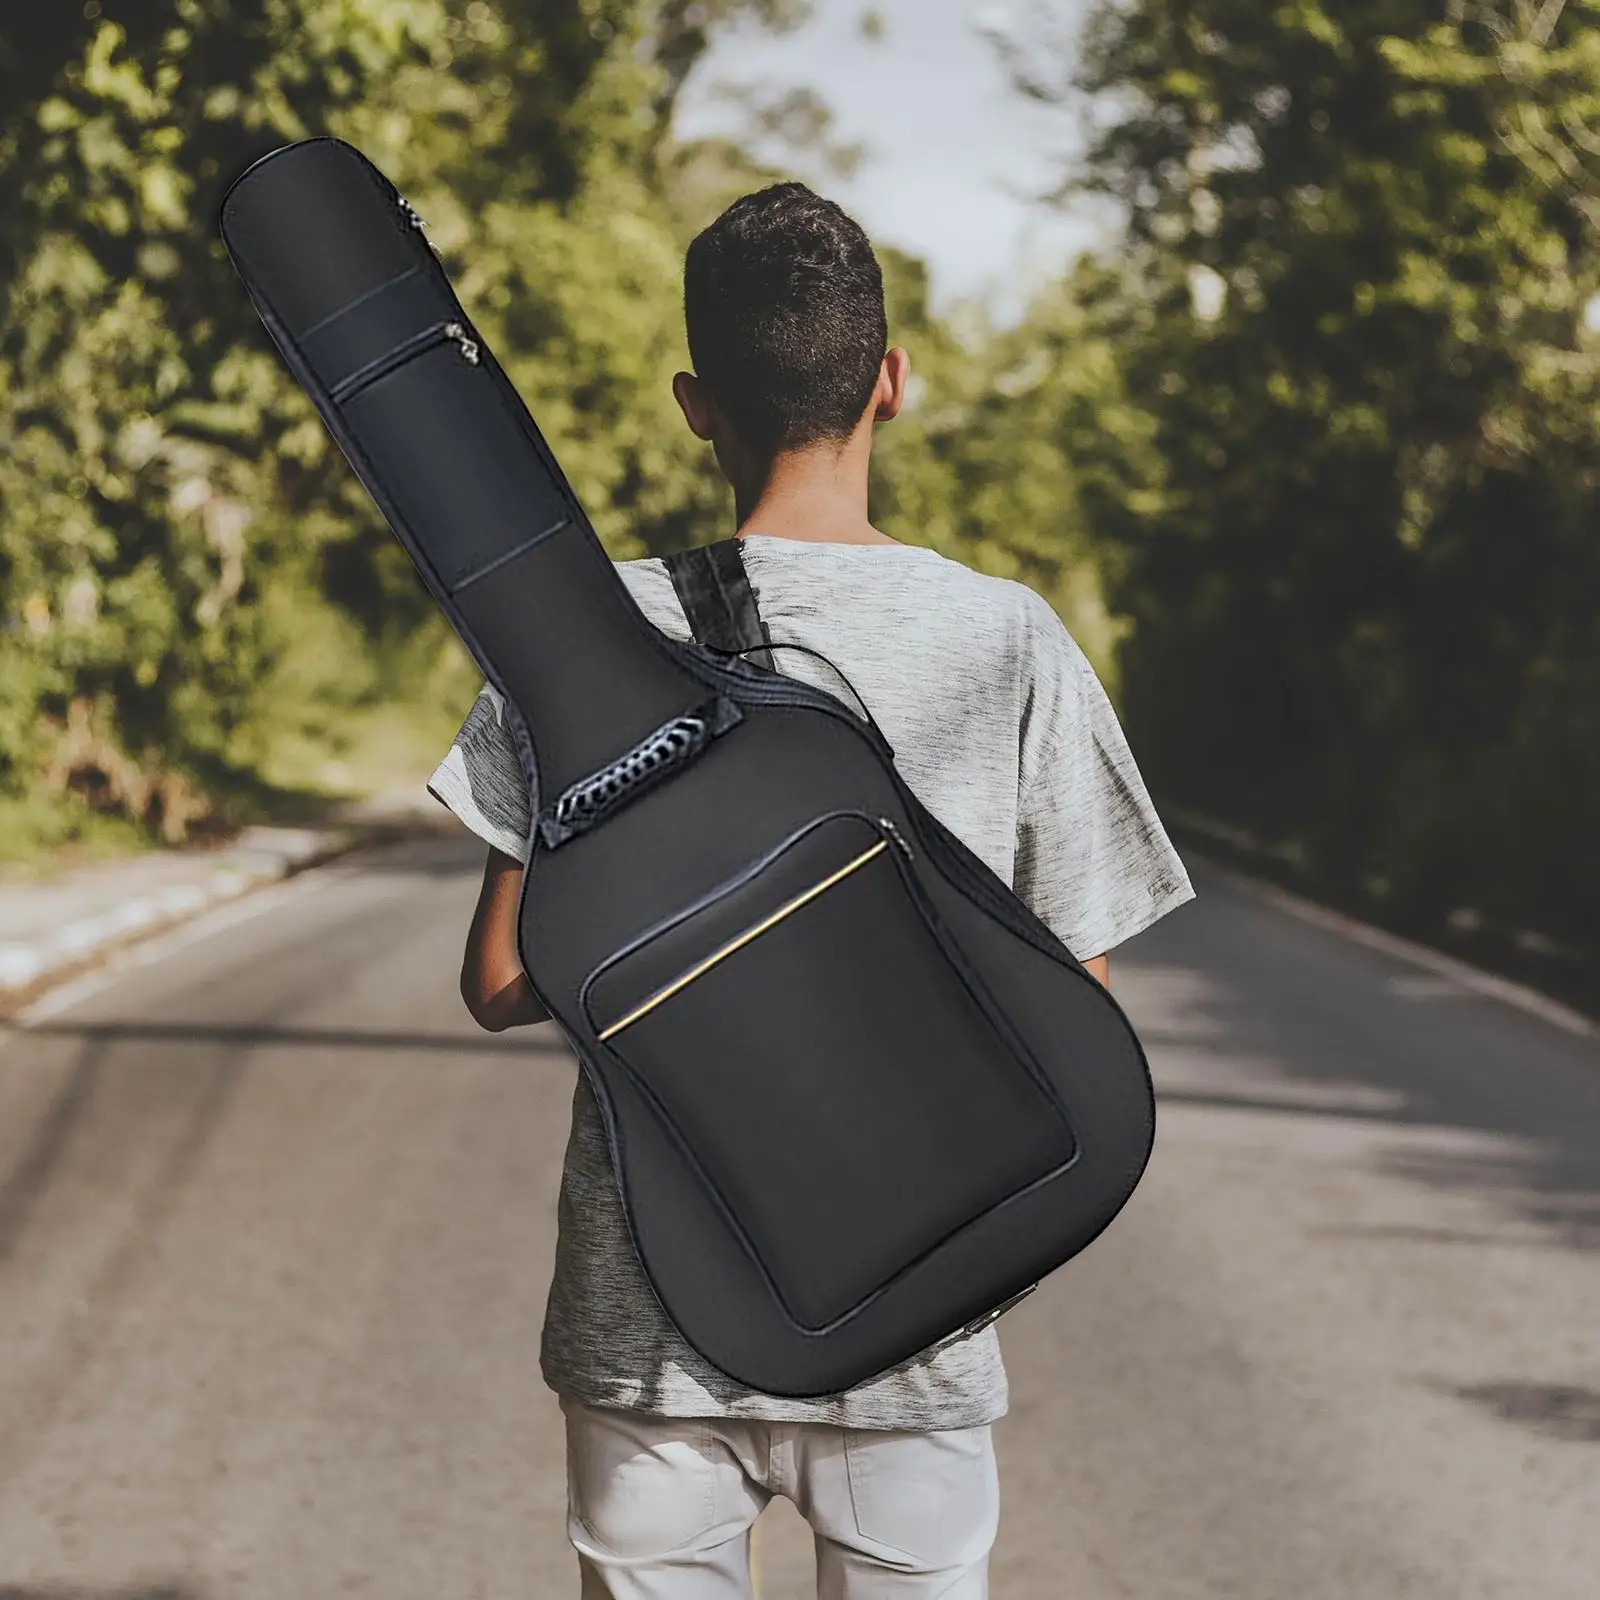 Soft Guitar Gig Bag Backpack Carry Case Gig Bag for 38/39/40/41 Guitar